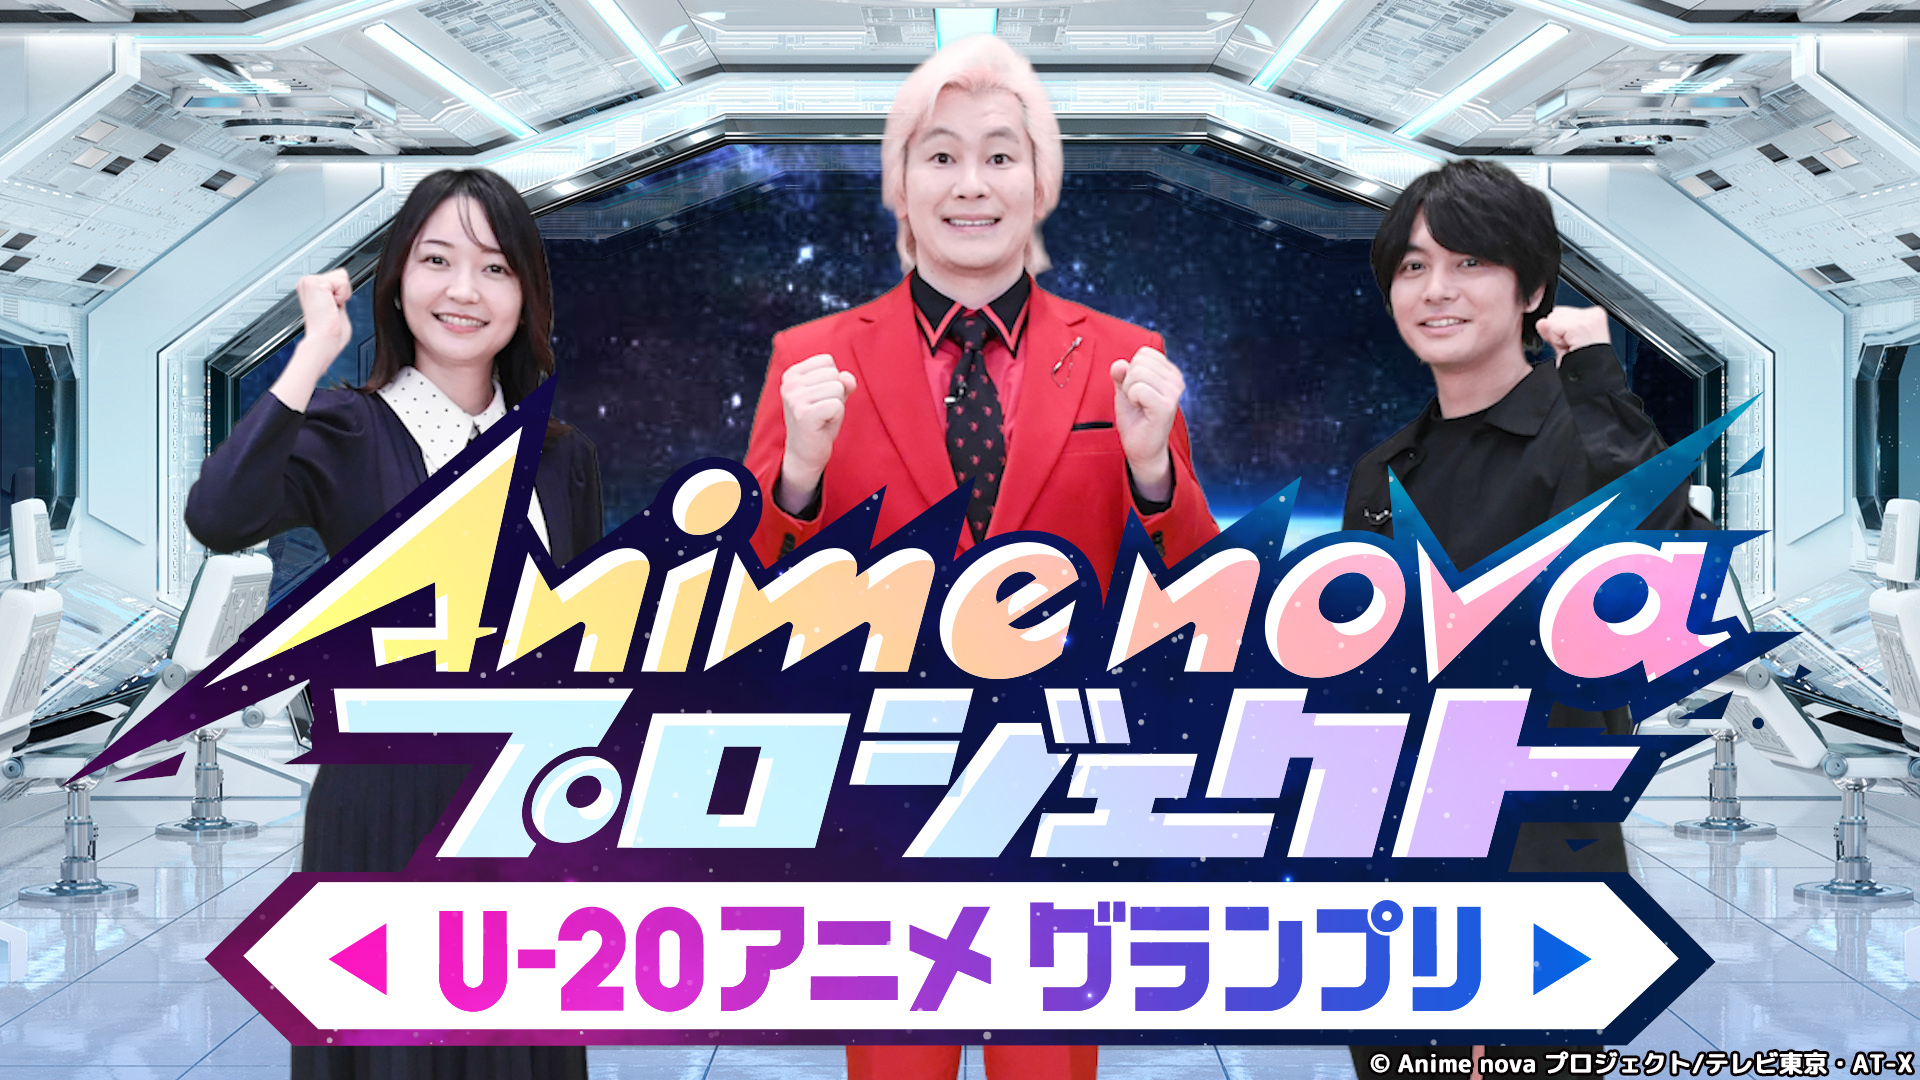 無料テレビでAnime nova プロジェクト U-20 アニメグランプリを視聴する